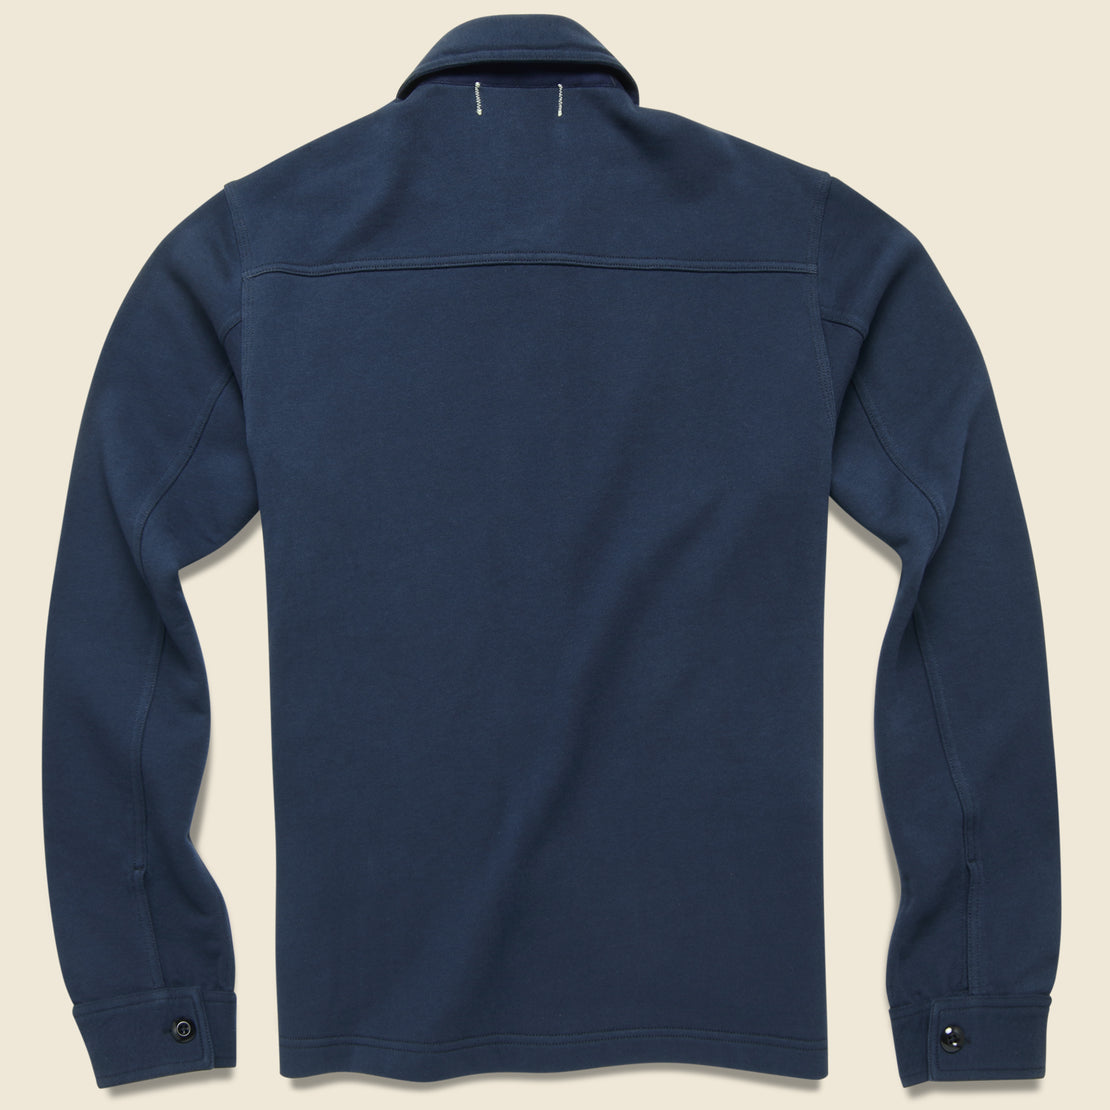 Fleece Workers Jacket - Navy - Alex Mill - STAG Provisions - Tops - Fleece / Sweatshirt